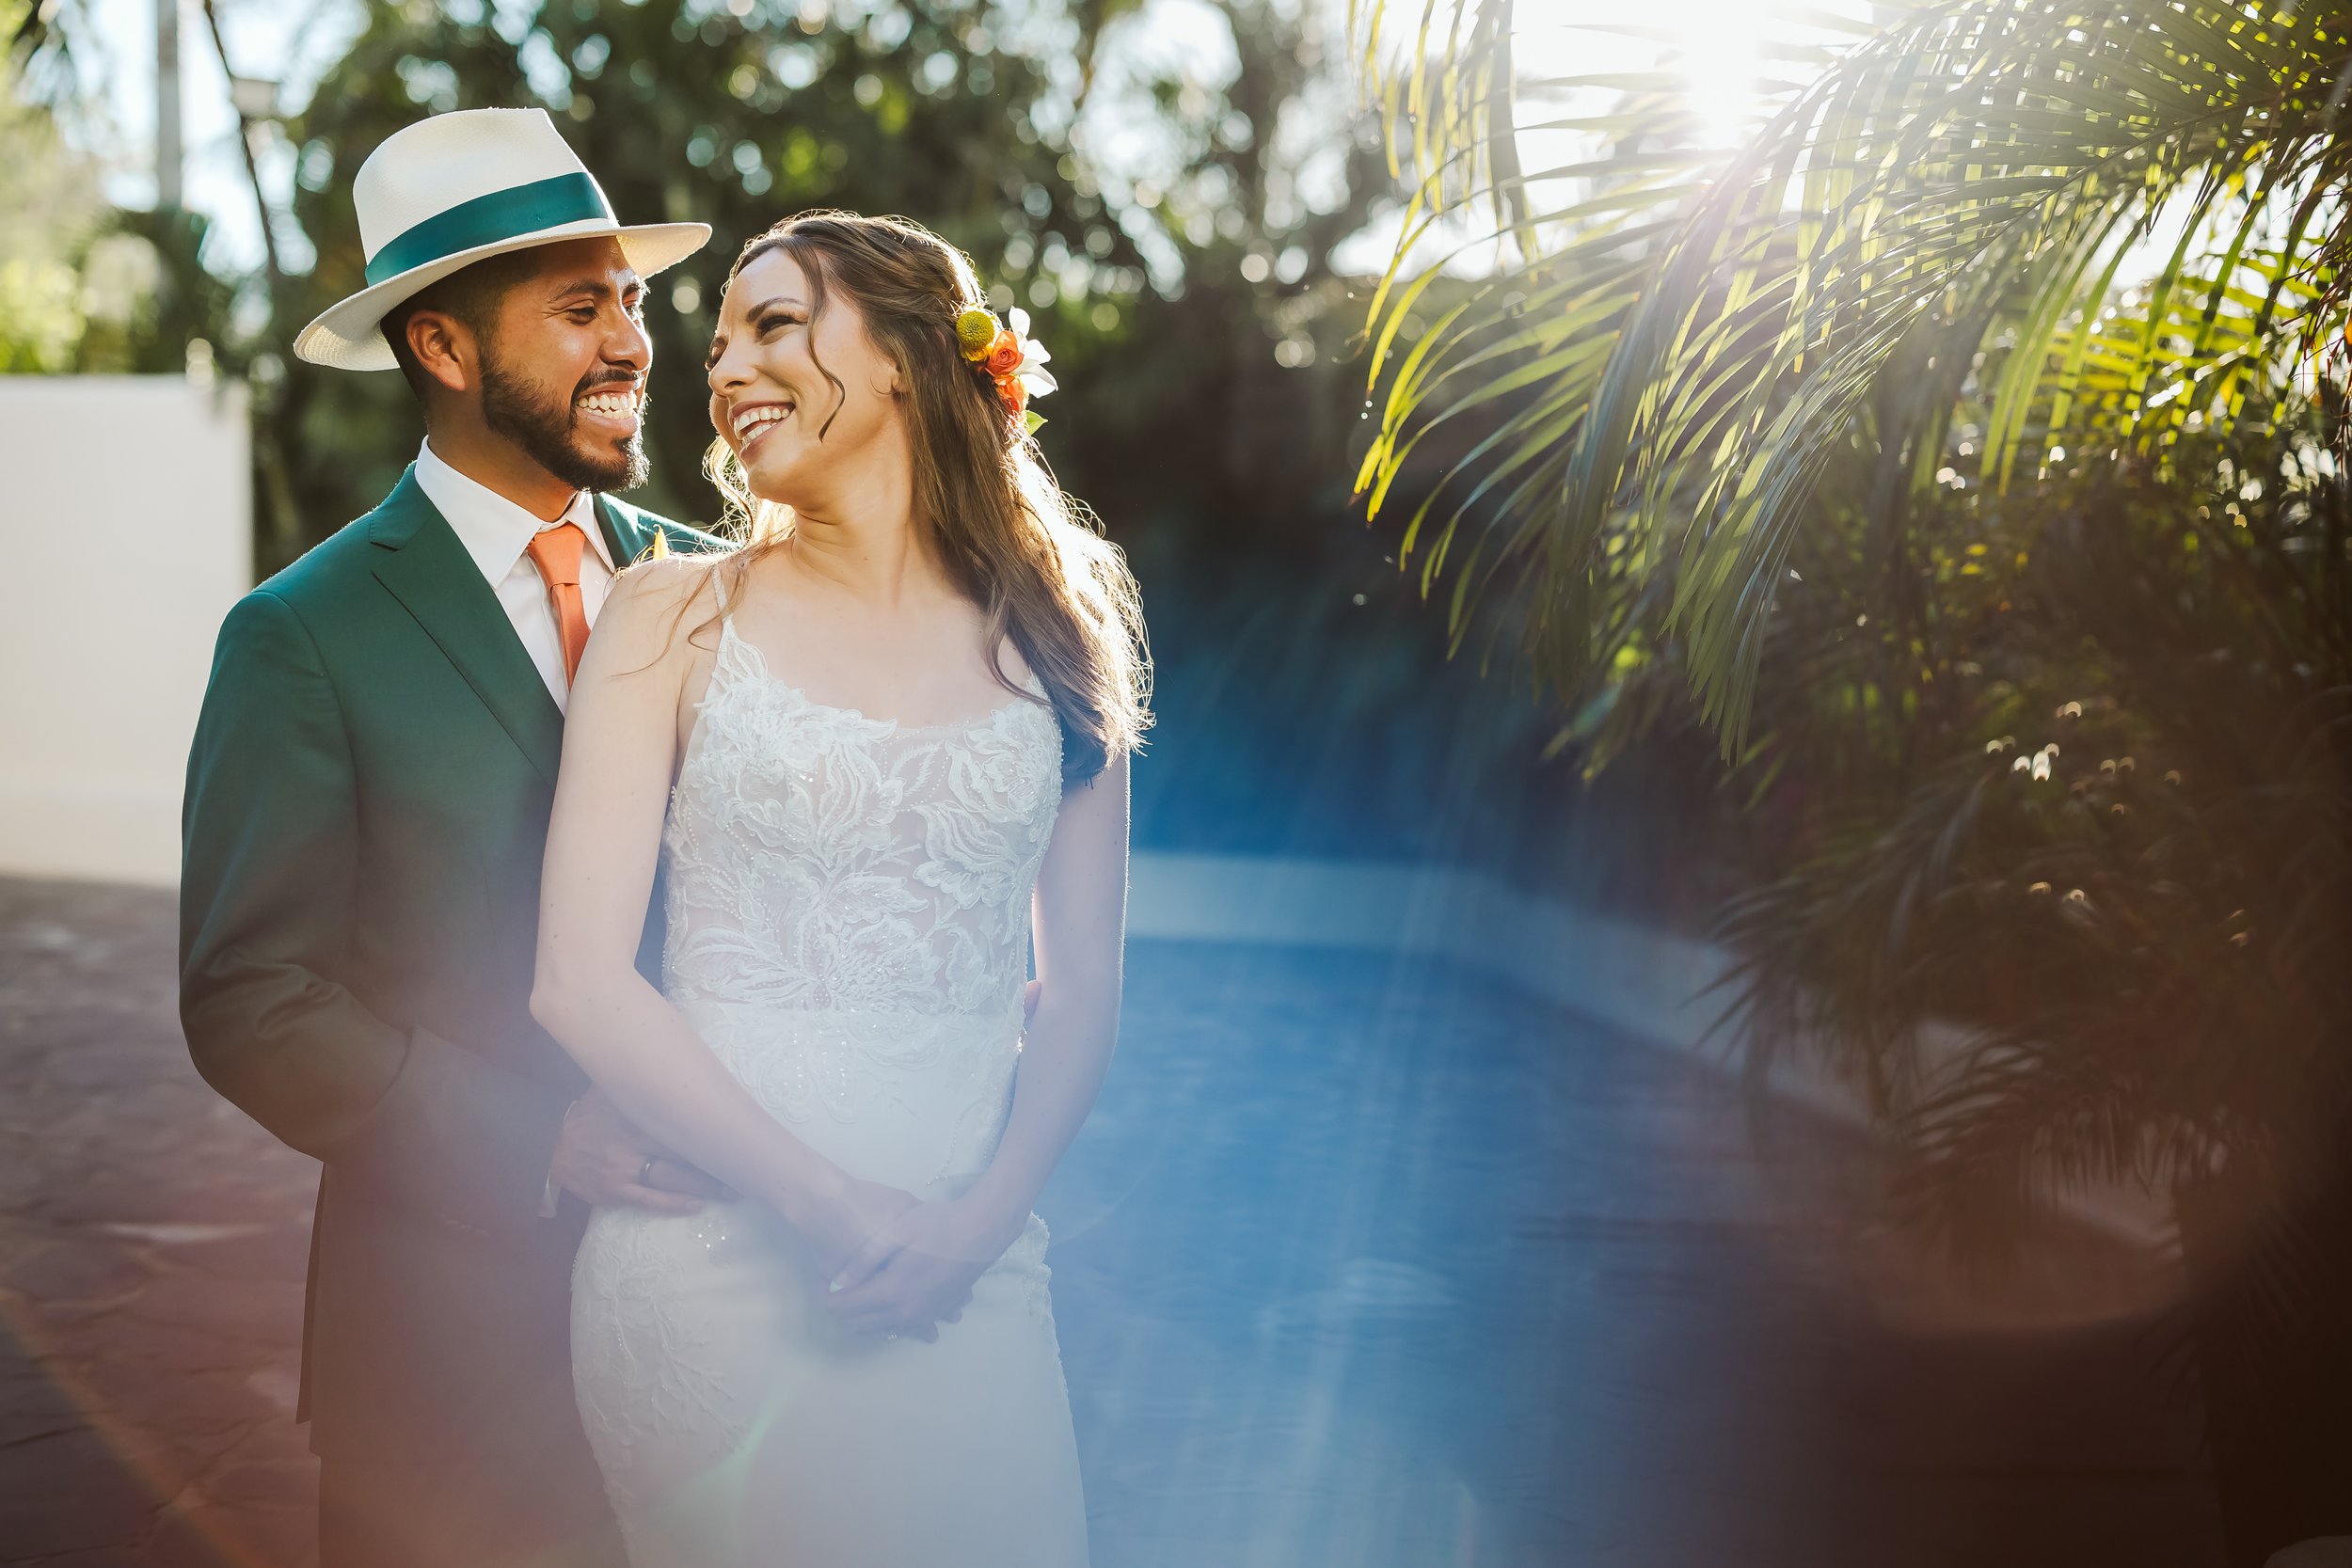 Wedding photographer in Mexico // Puerto Vallarta and Cabo San Lucas — Eder  Acevedo Photographer